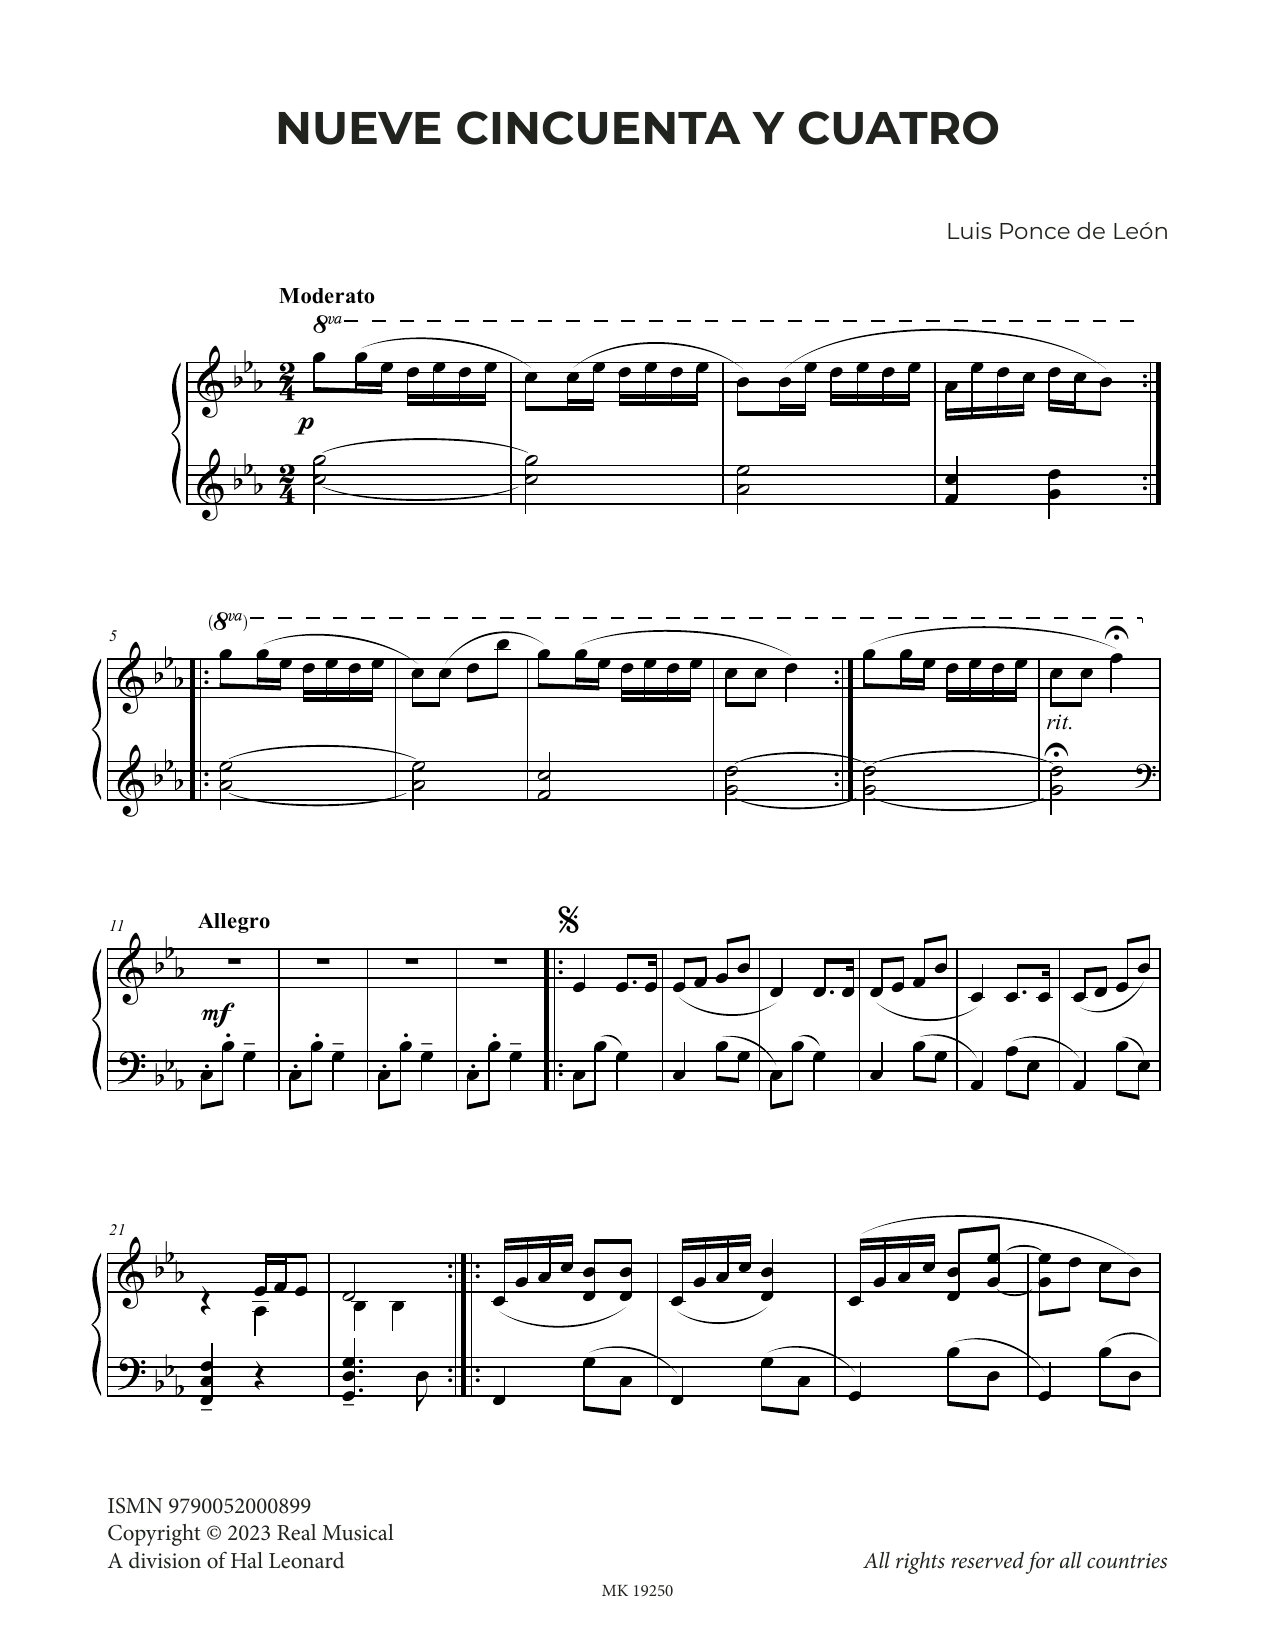 Luis Ponce de León Nueve Cincuenta y Cuatro sheet music notes and chords arranged for Piano Solo